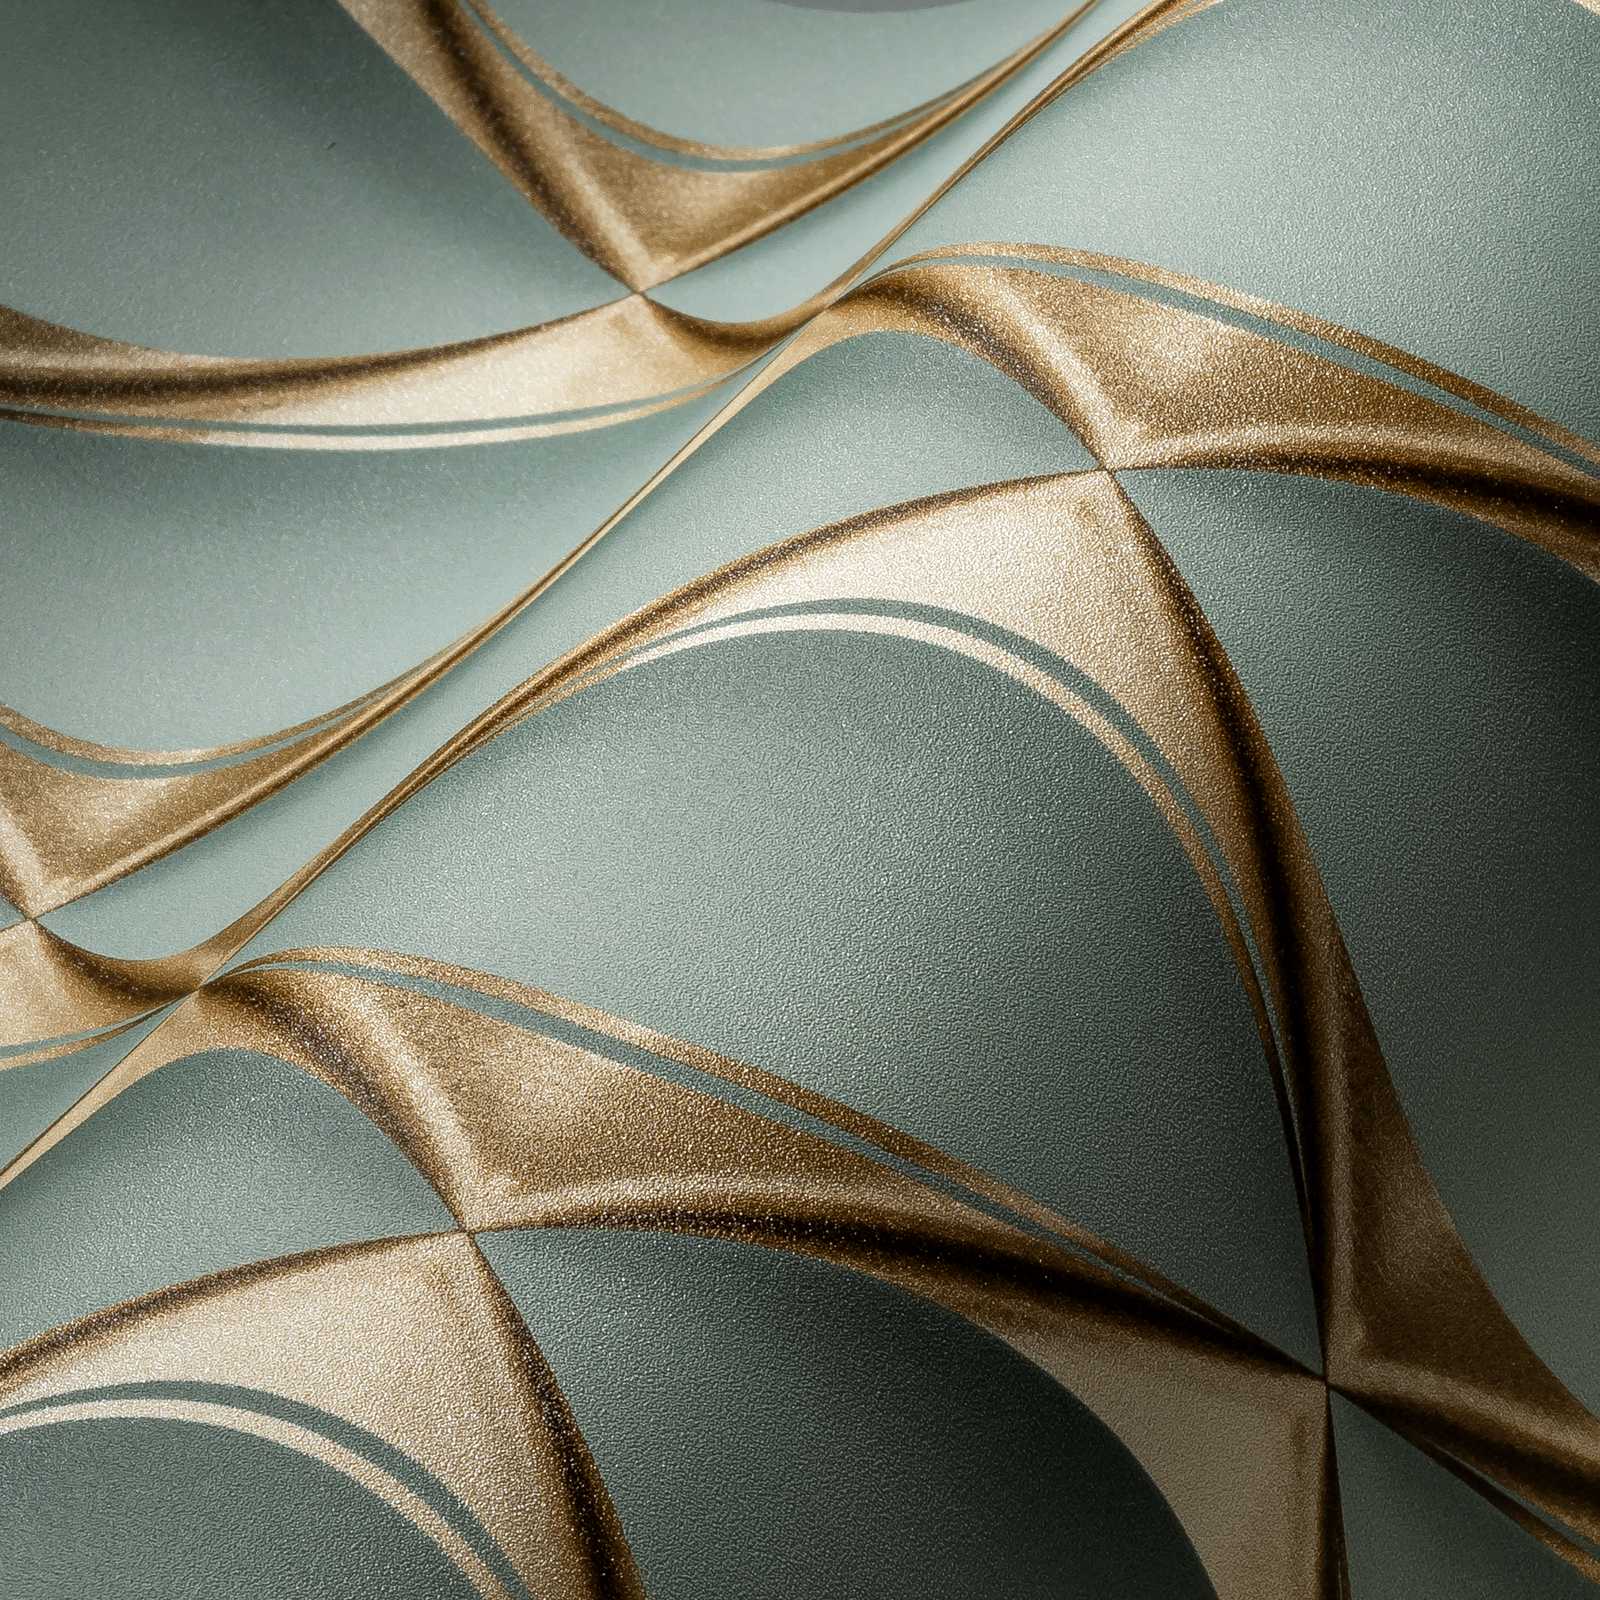             behang 3D ontwerp met metalen facetten patroon - groen, metallic
        